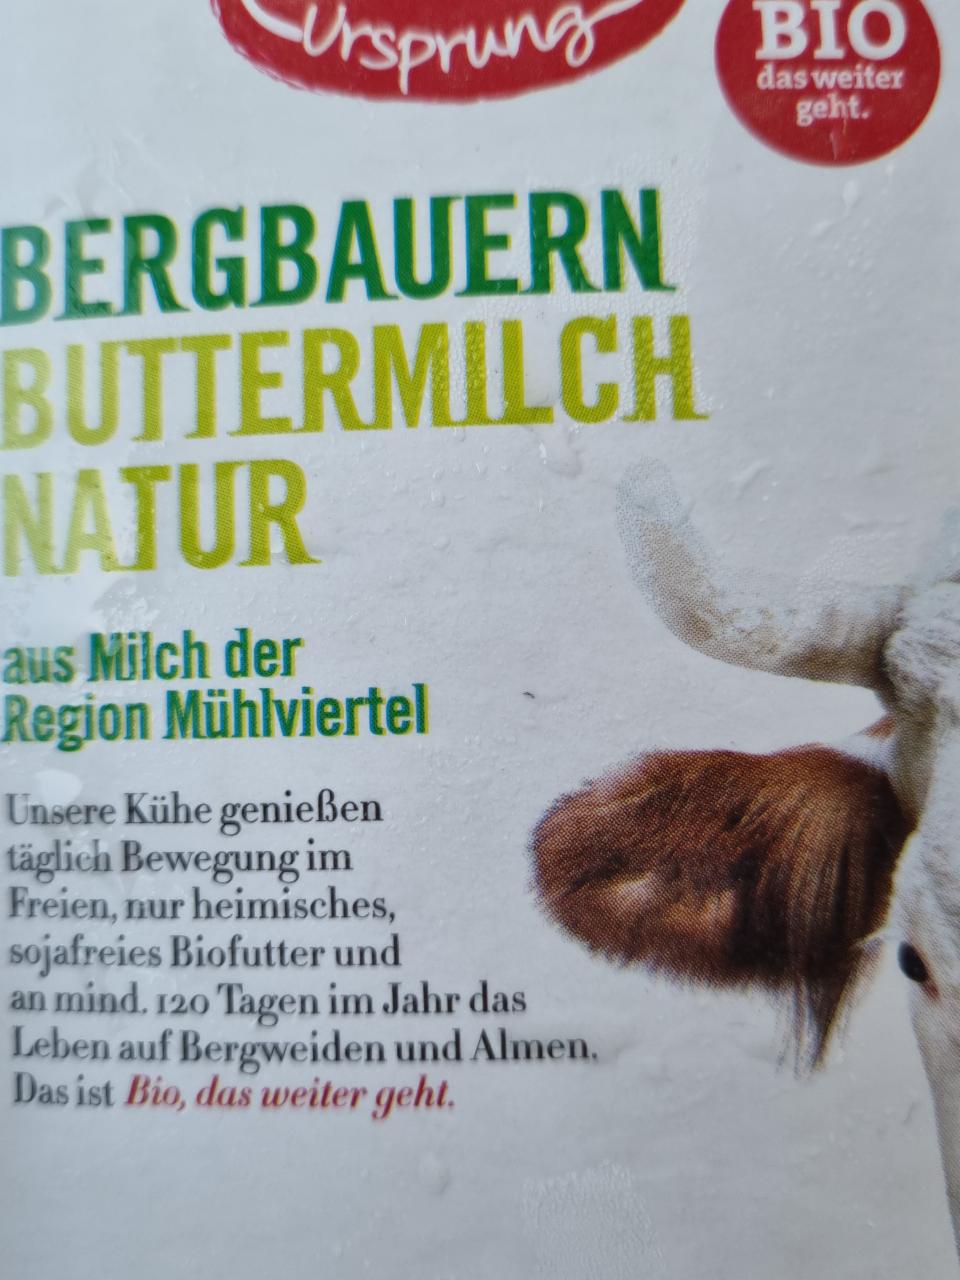 Fotografie - Bio Bergbauern Buttermilch Natur Zurück zum Ursprung